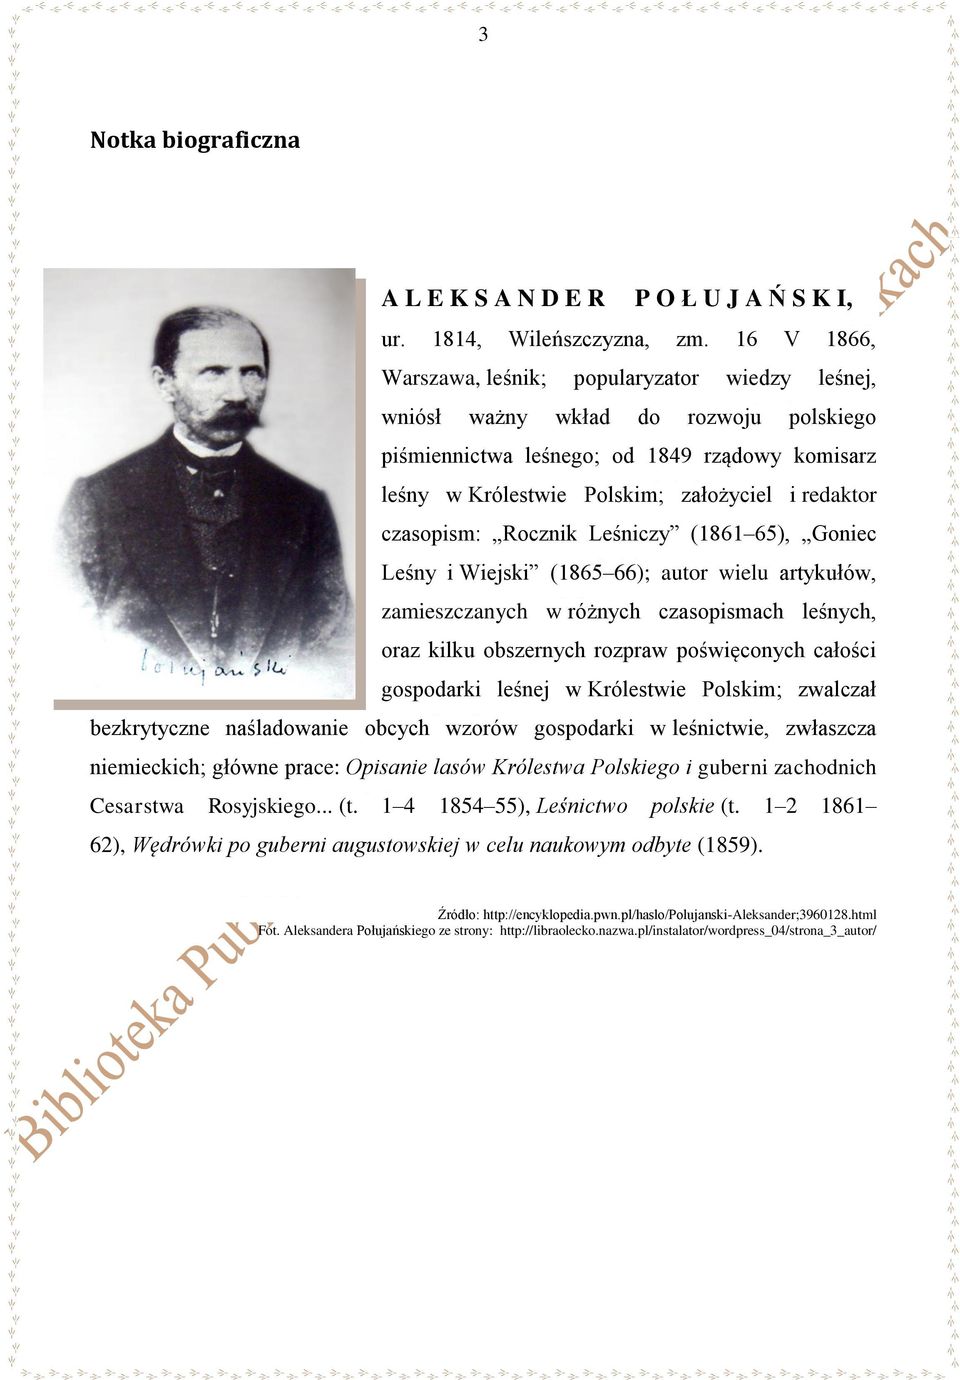 czasopism: Rocznik Leśniczy (1861 65), Goniec Leśny i Wiejski (1865 66); autor wielu artykułów, zamieszczanych w różnych czasopismach leśnych, oraz kilku obszernych rozpraw poświęconych całości